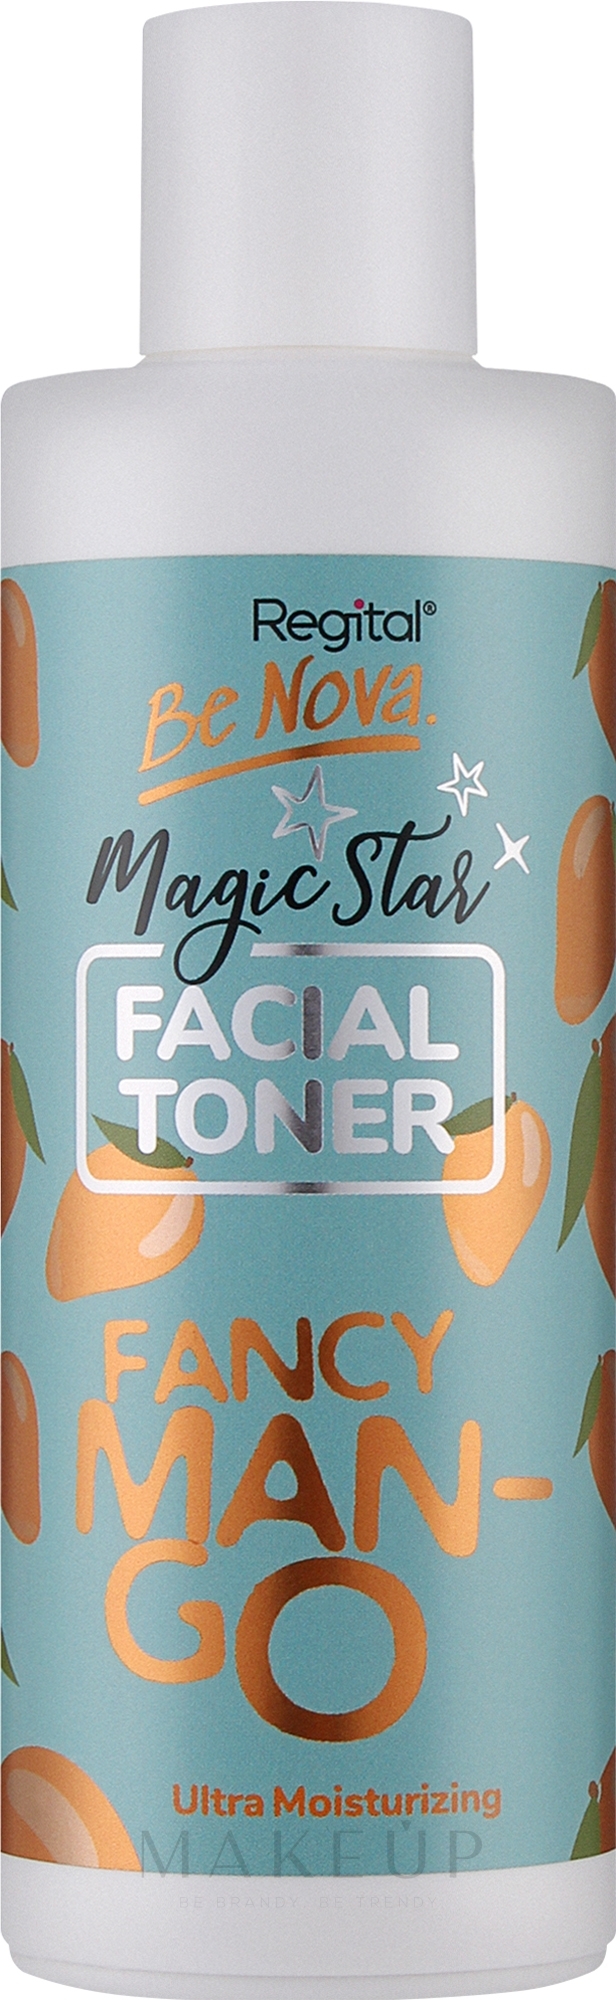 Gesichtstoner Mango - Regital Facial Toner Fancy Mango — Bild 150 ml